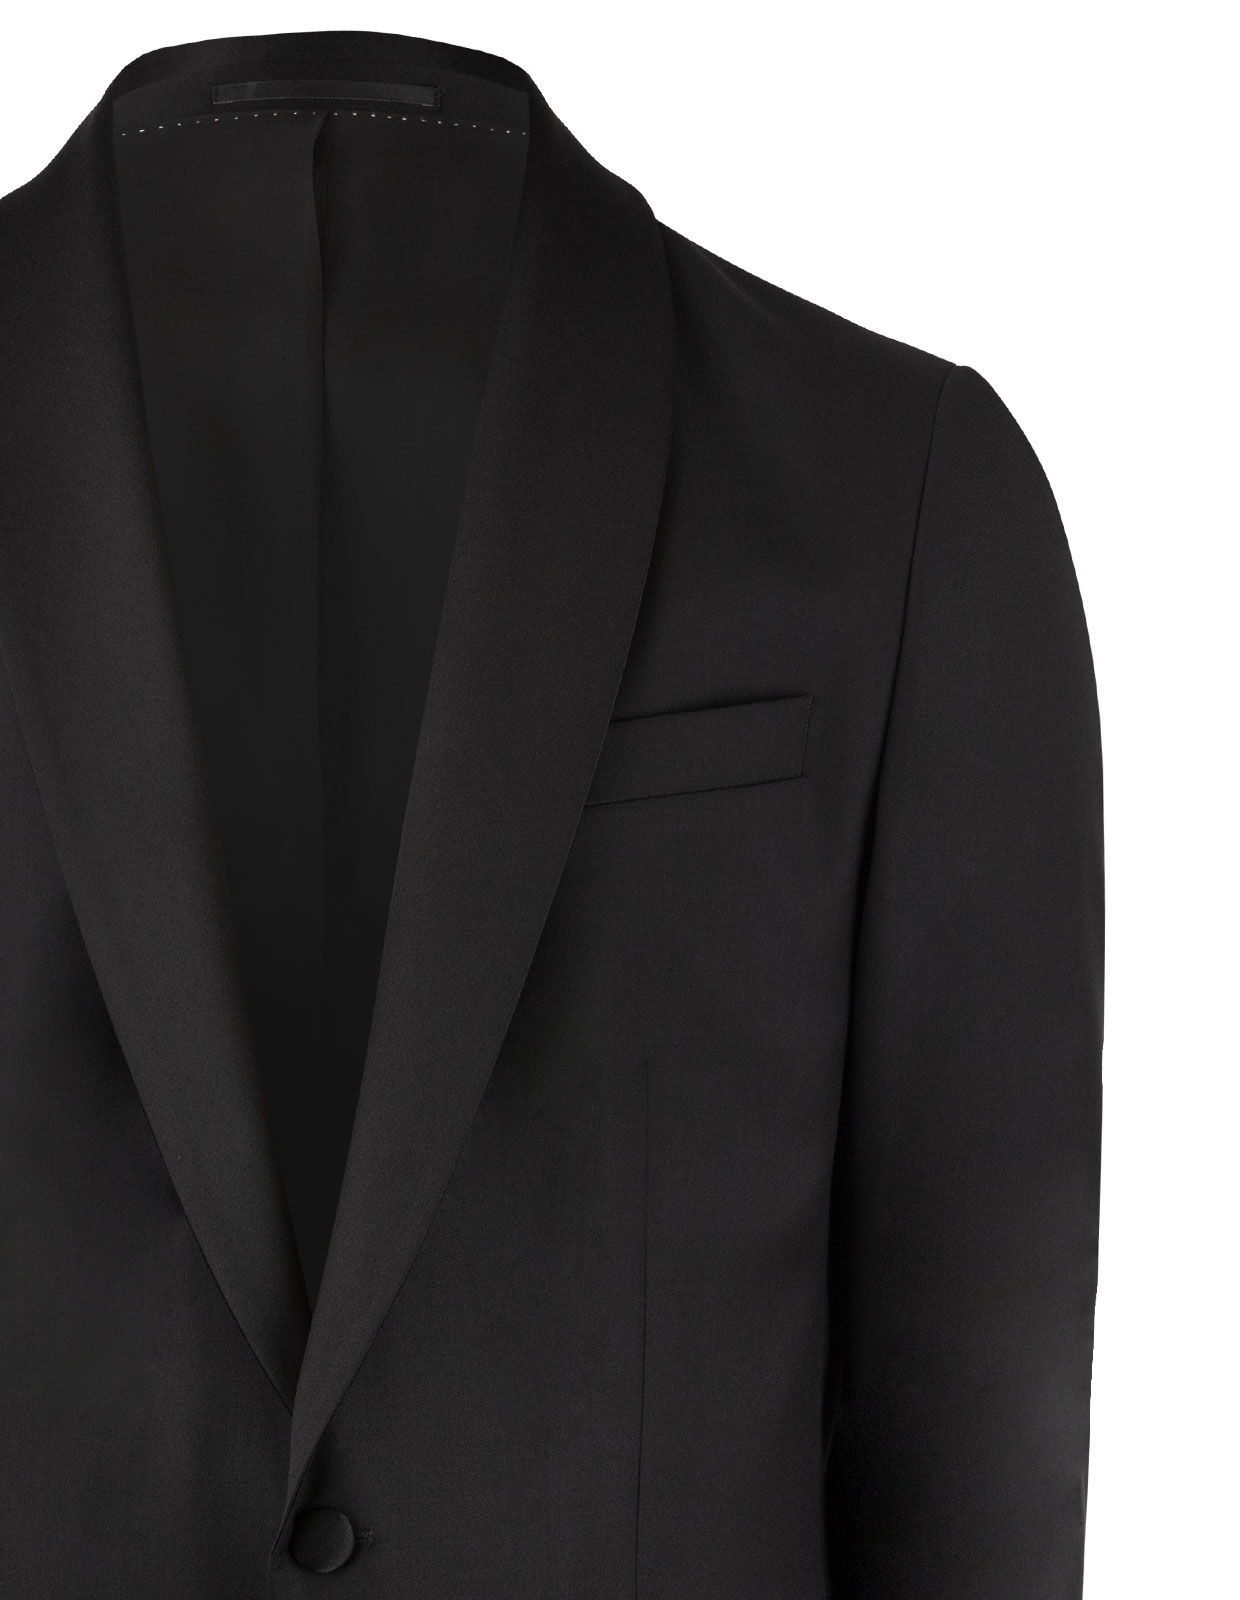 Tuxedo Shawl Jacket Mix & Match Black